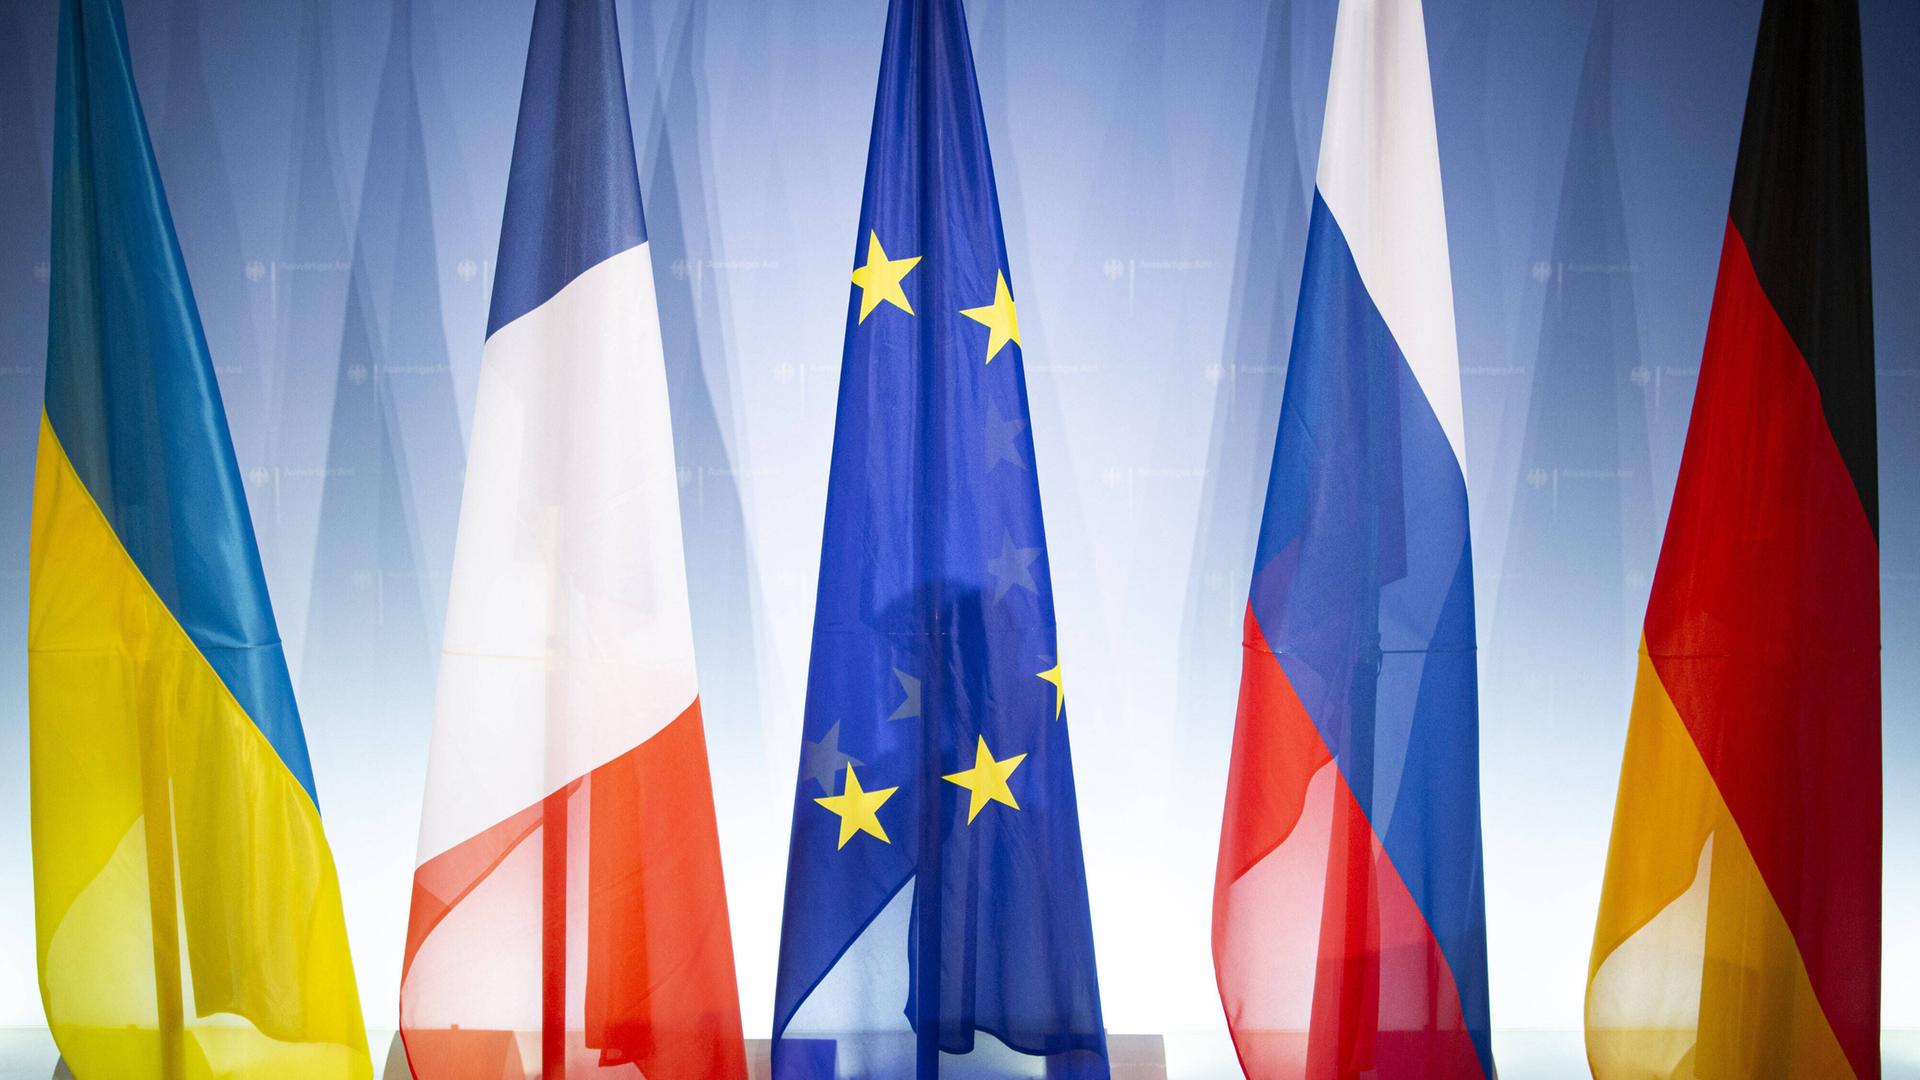 Fahnen Normandie-Format und die EU-Flaggge (Symbolbild)